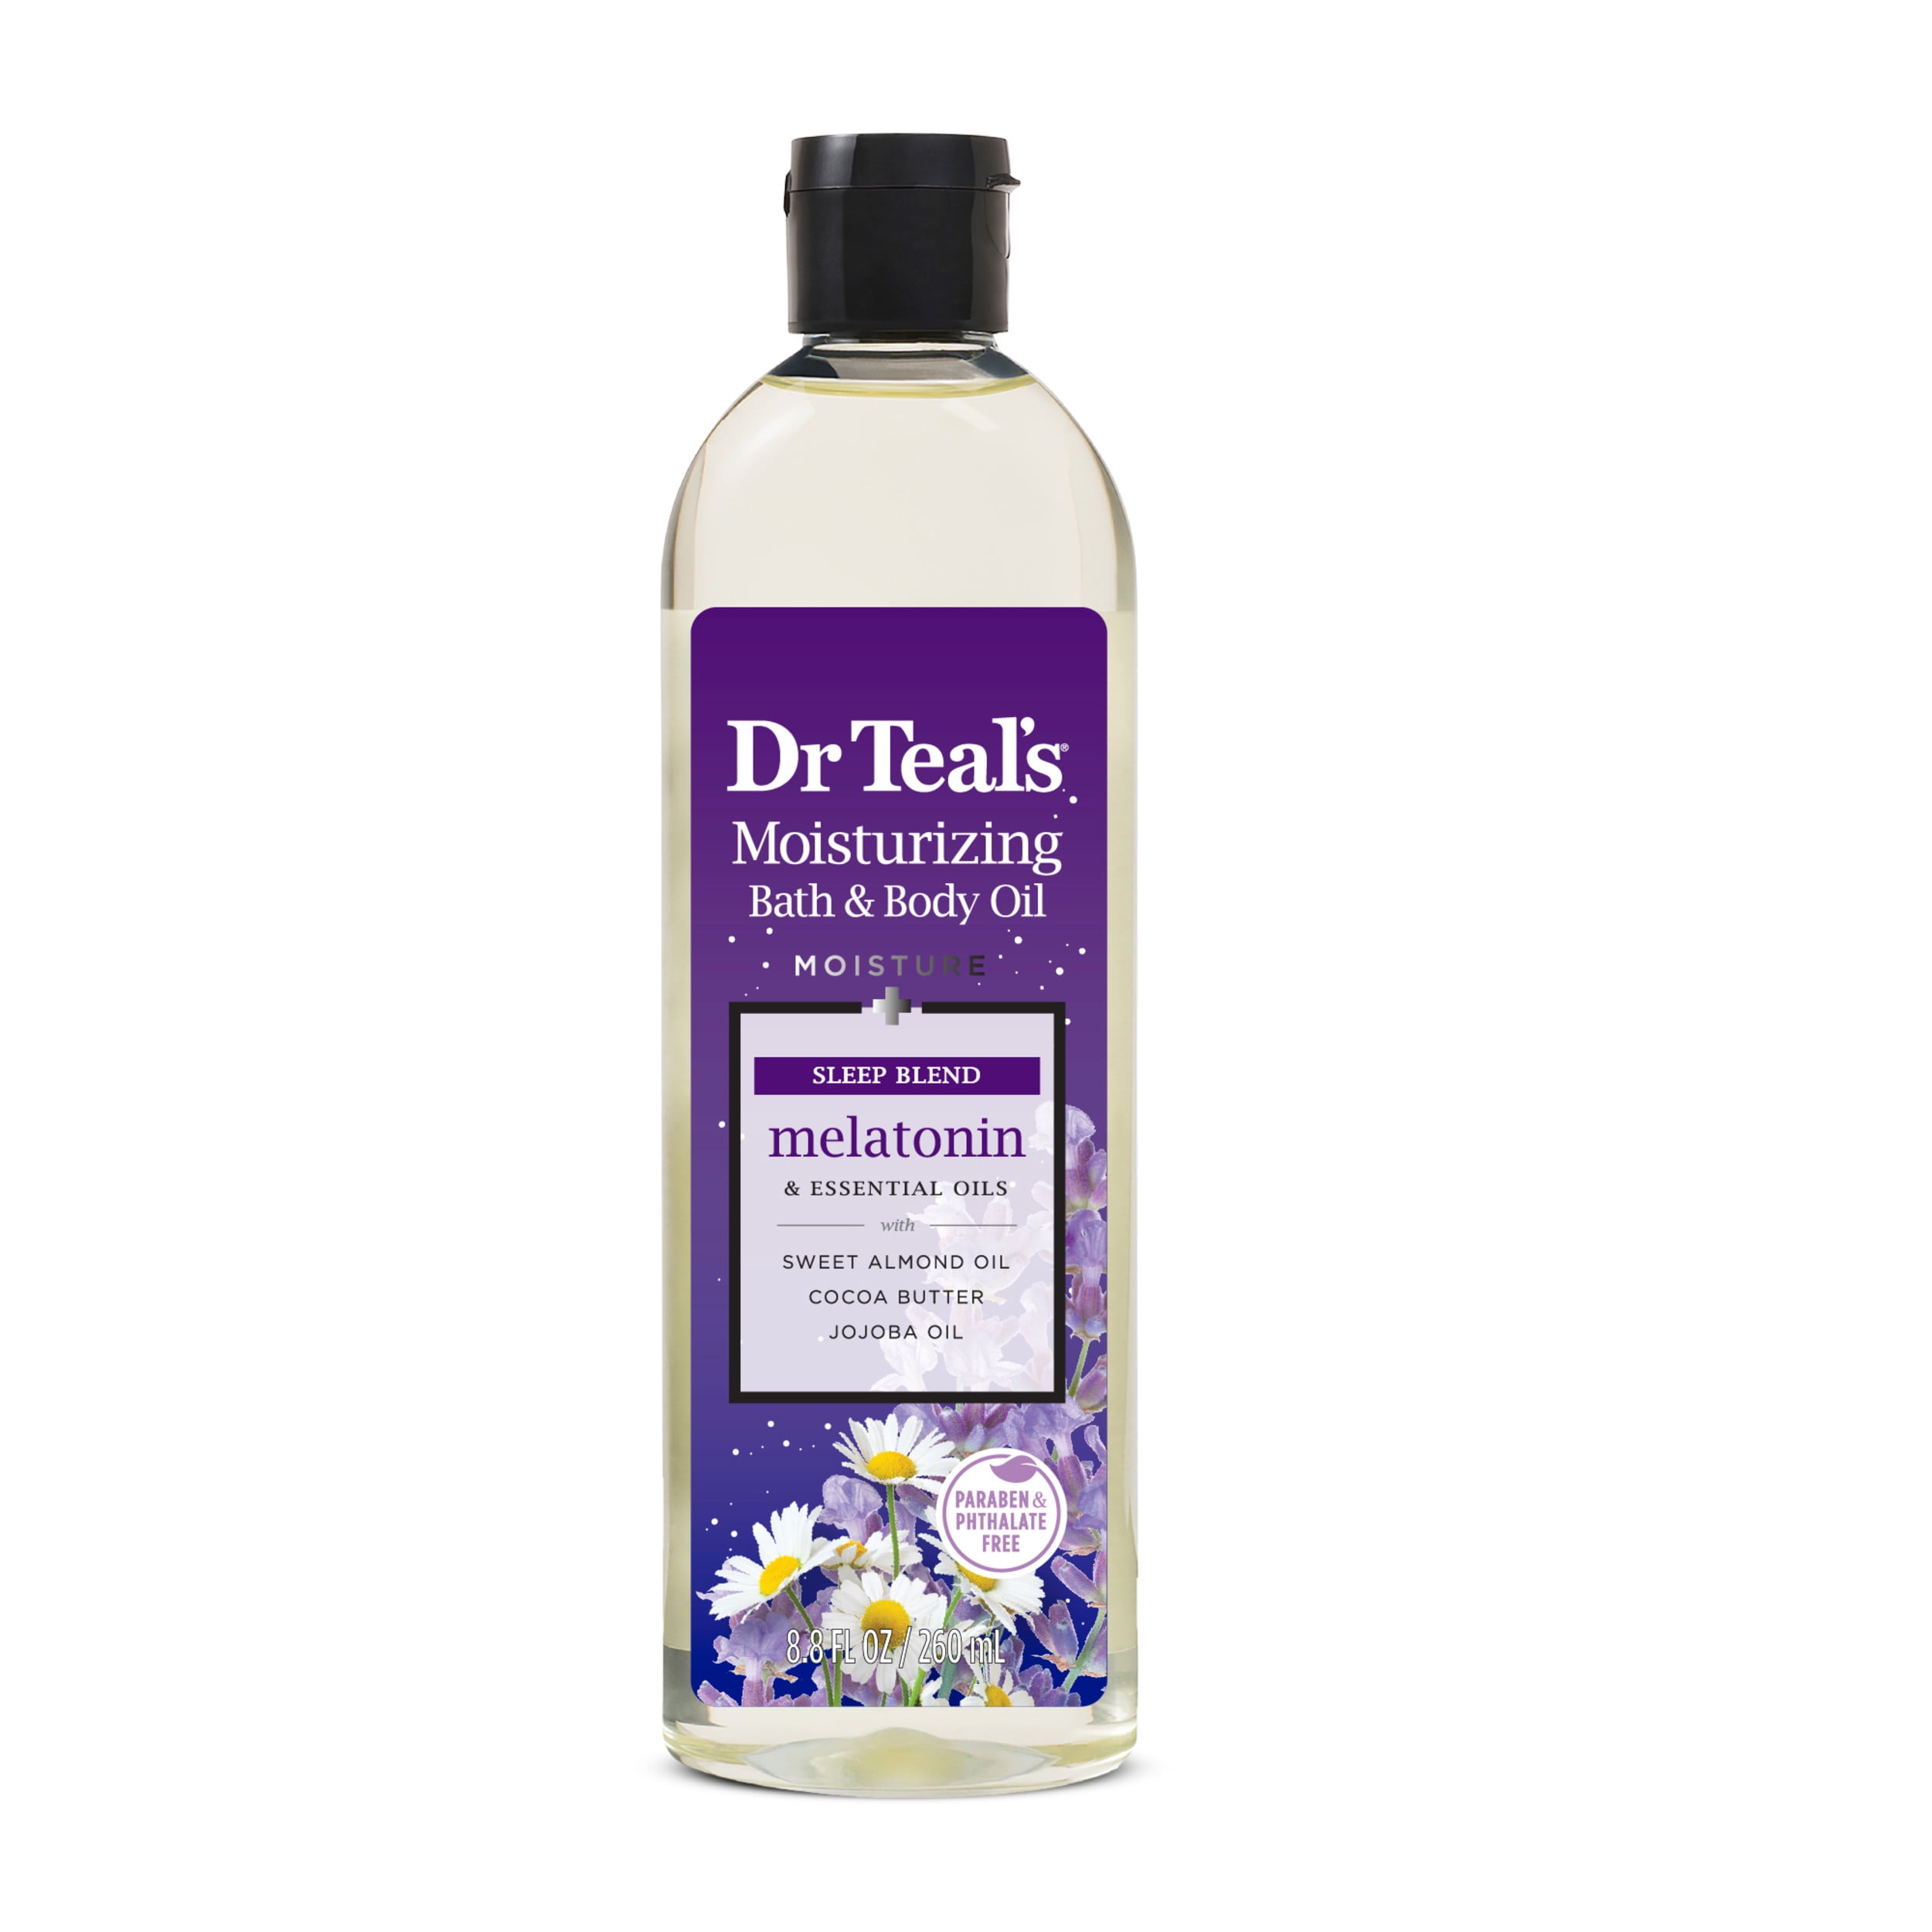 Dr Teal's Bath & Body Oil with Melatonin & Essential Oils, 8.8 fl oz.